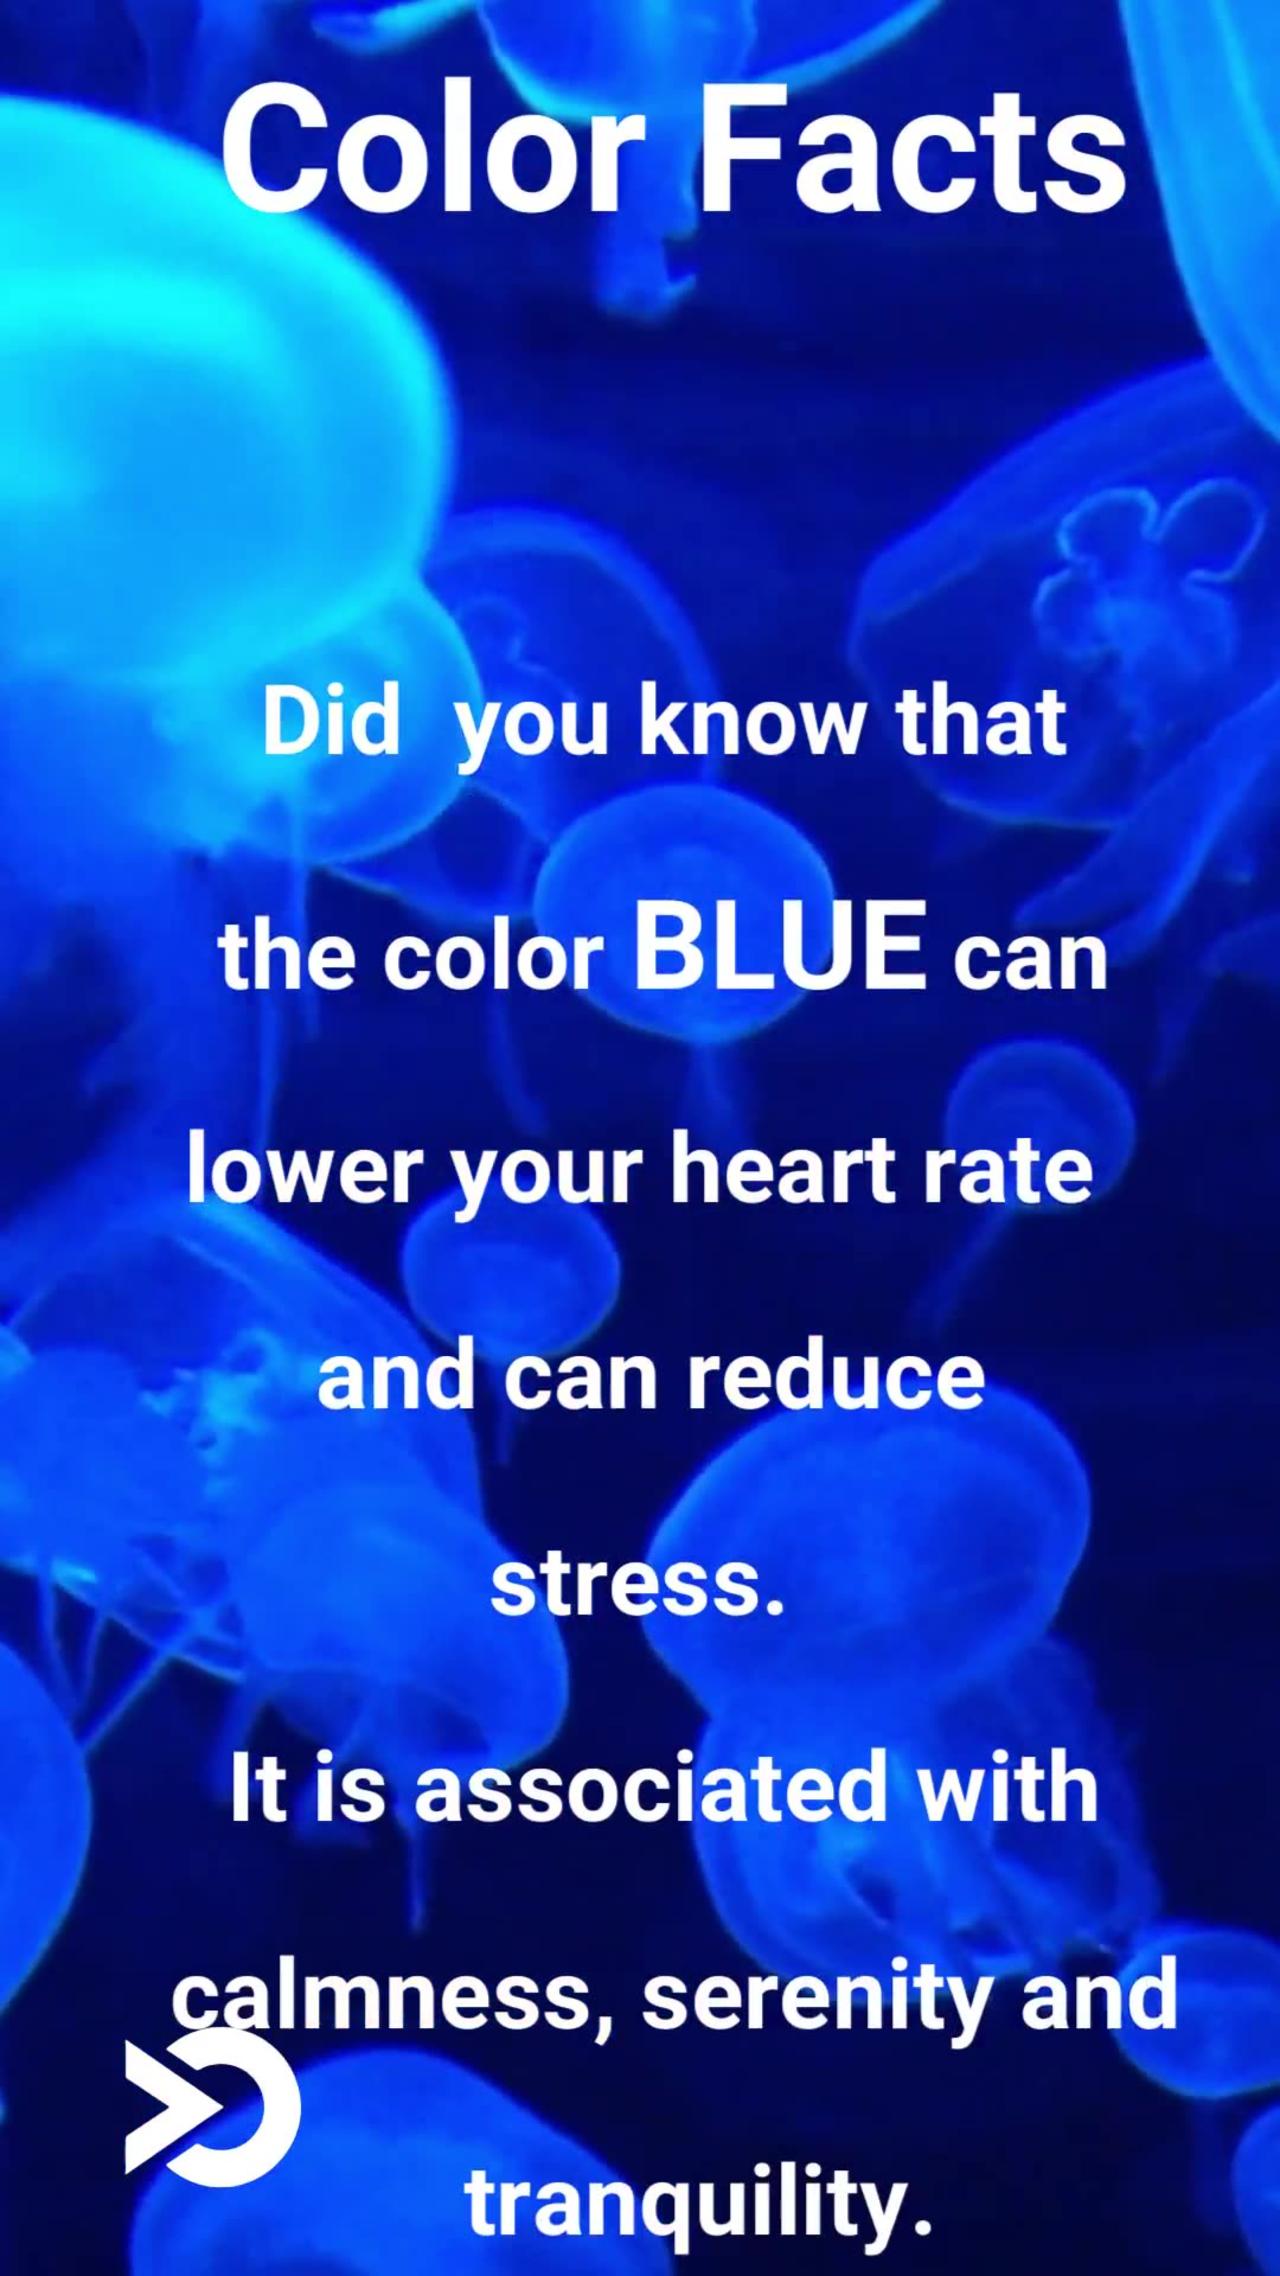 Color Facts - Blue